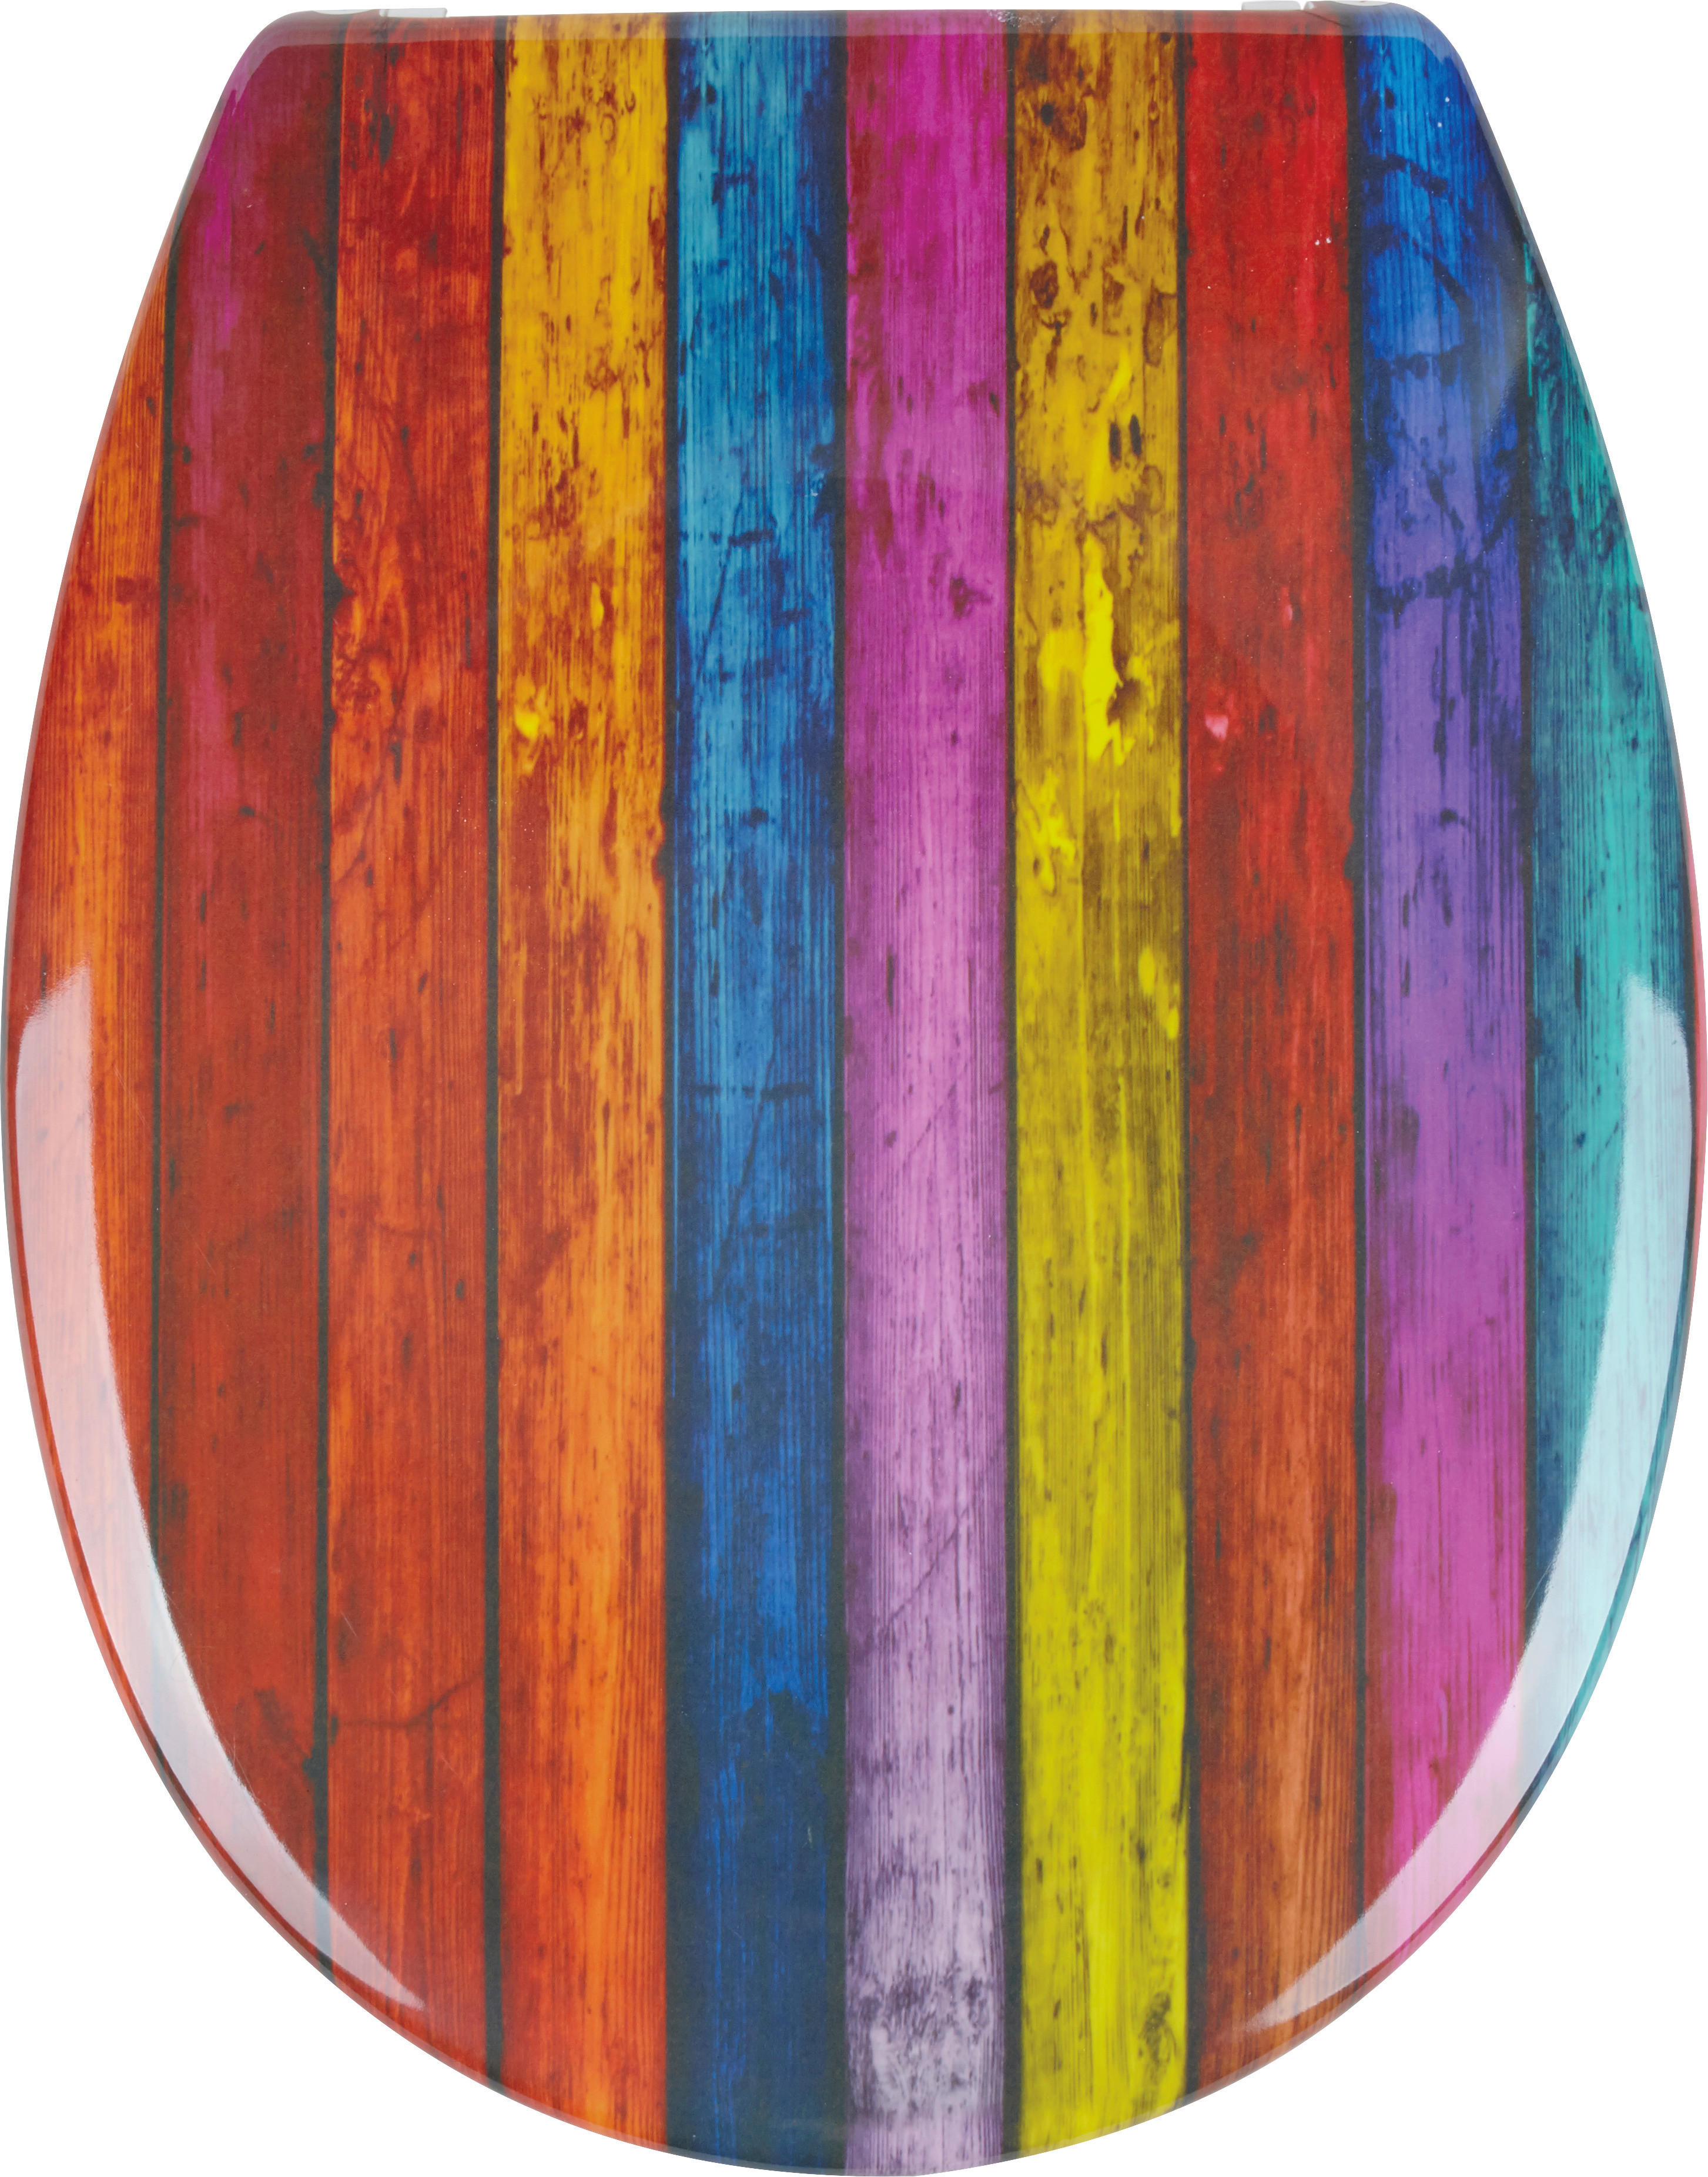 WC ÜLŐKE - színes, Basics, műanyag (37/3,5/46cm) - Sadena